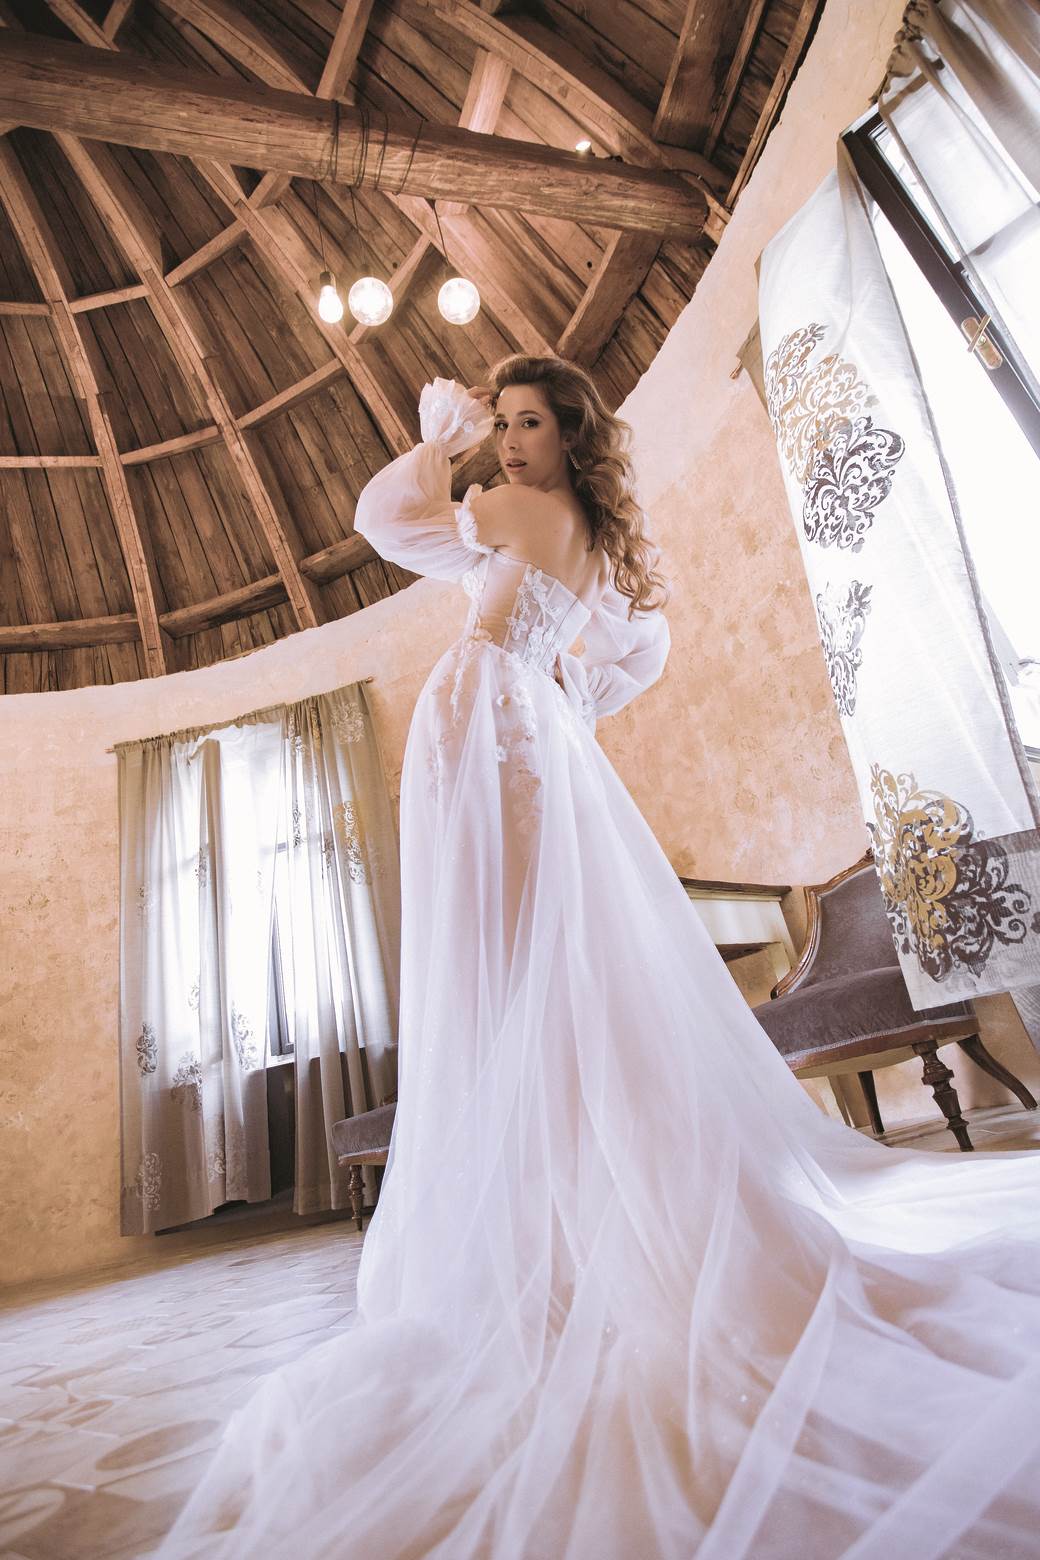 Pjevačica Nela Đinđić: 'Odmalena želim imati veliku, bajkovitu vjenčanicu'